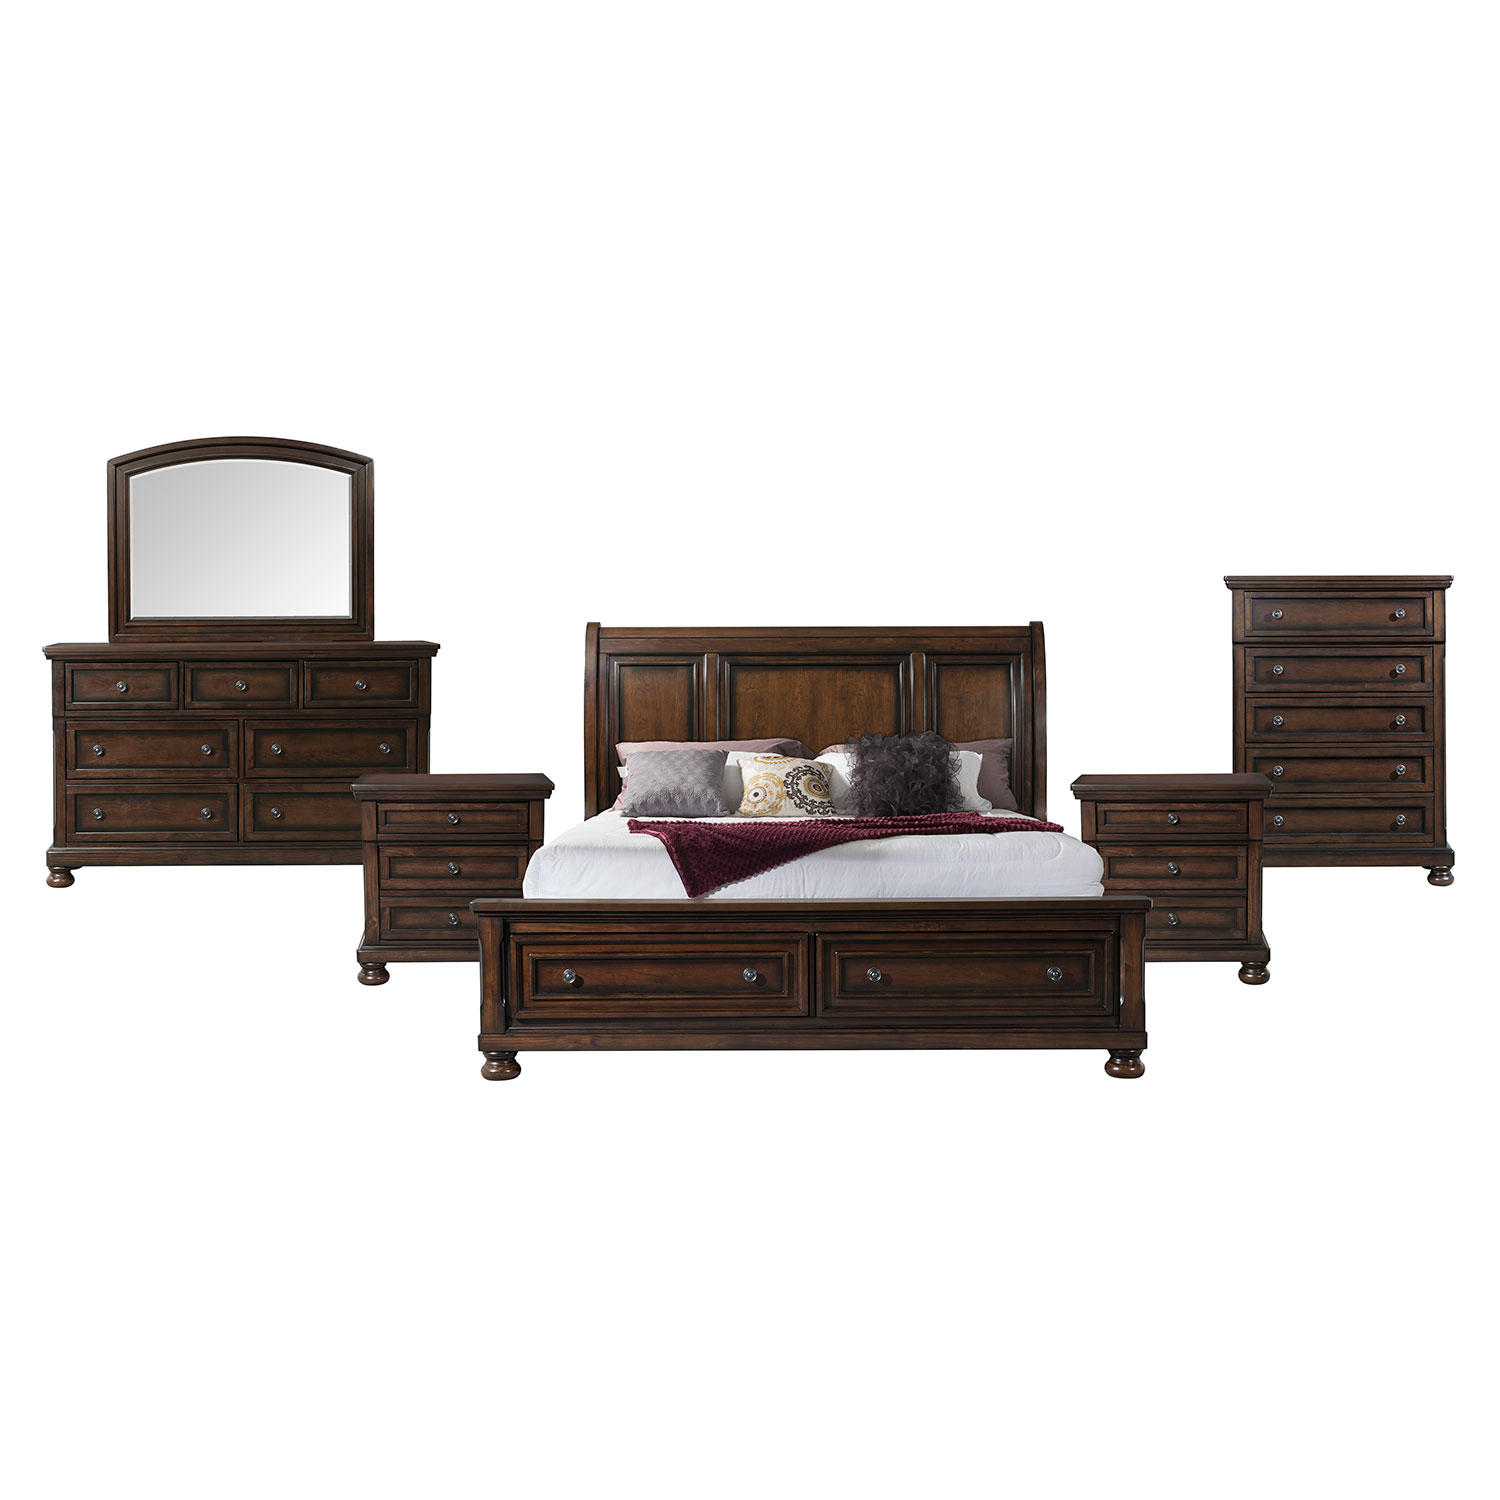 Kingsley Storage 6 Piece King Bedroom Furniture Set